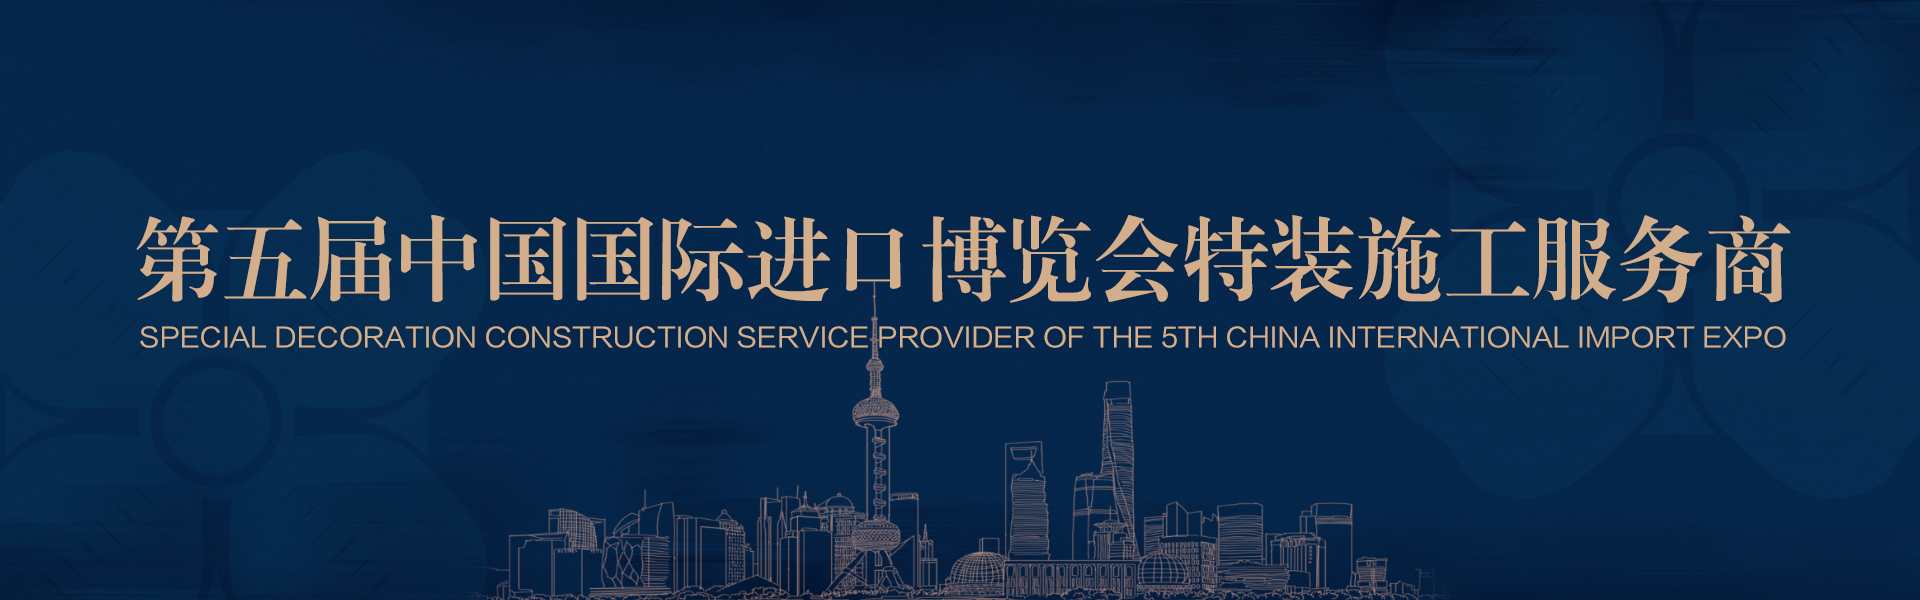 第五屆中國國際進口博覽會特裝施工服務商